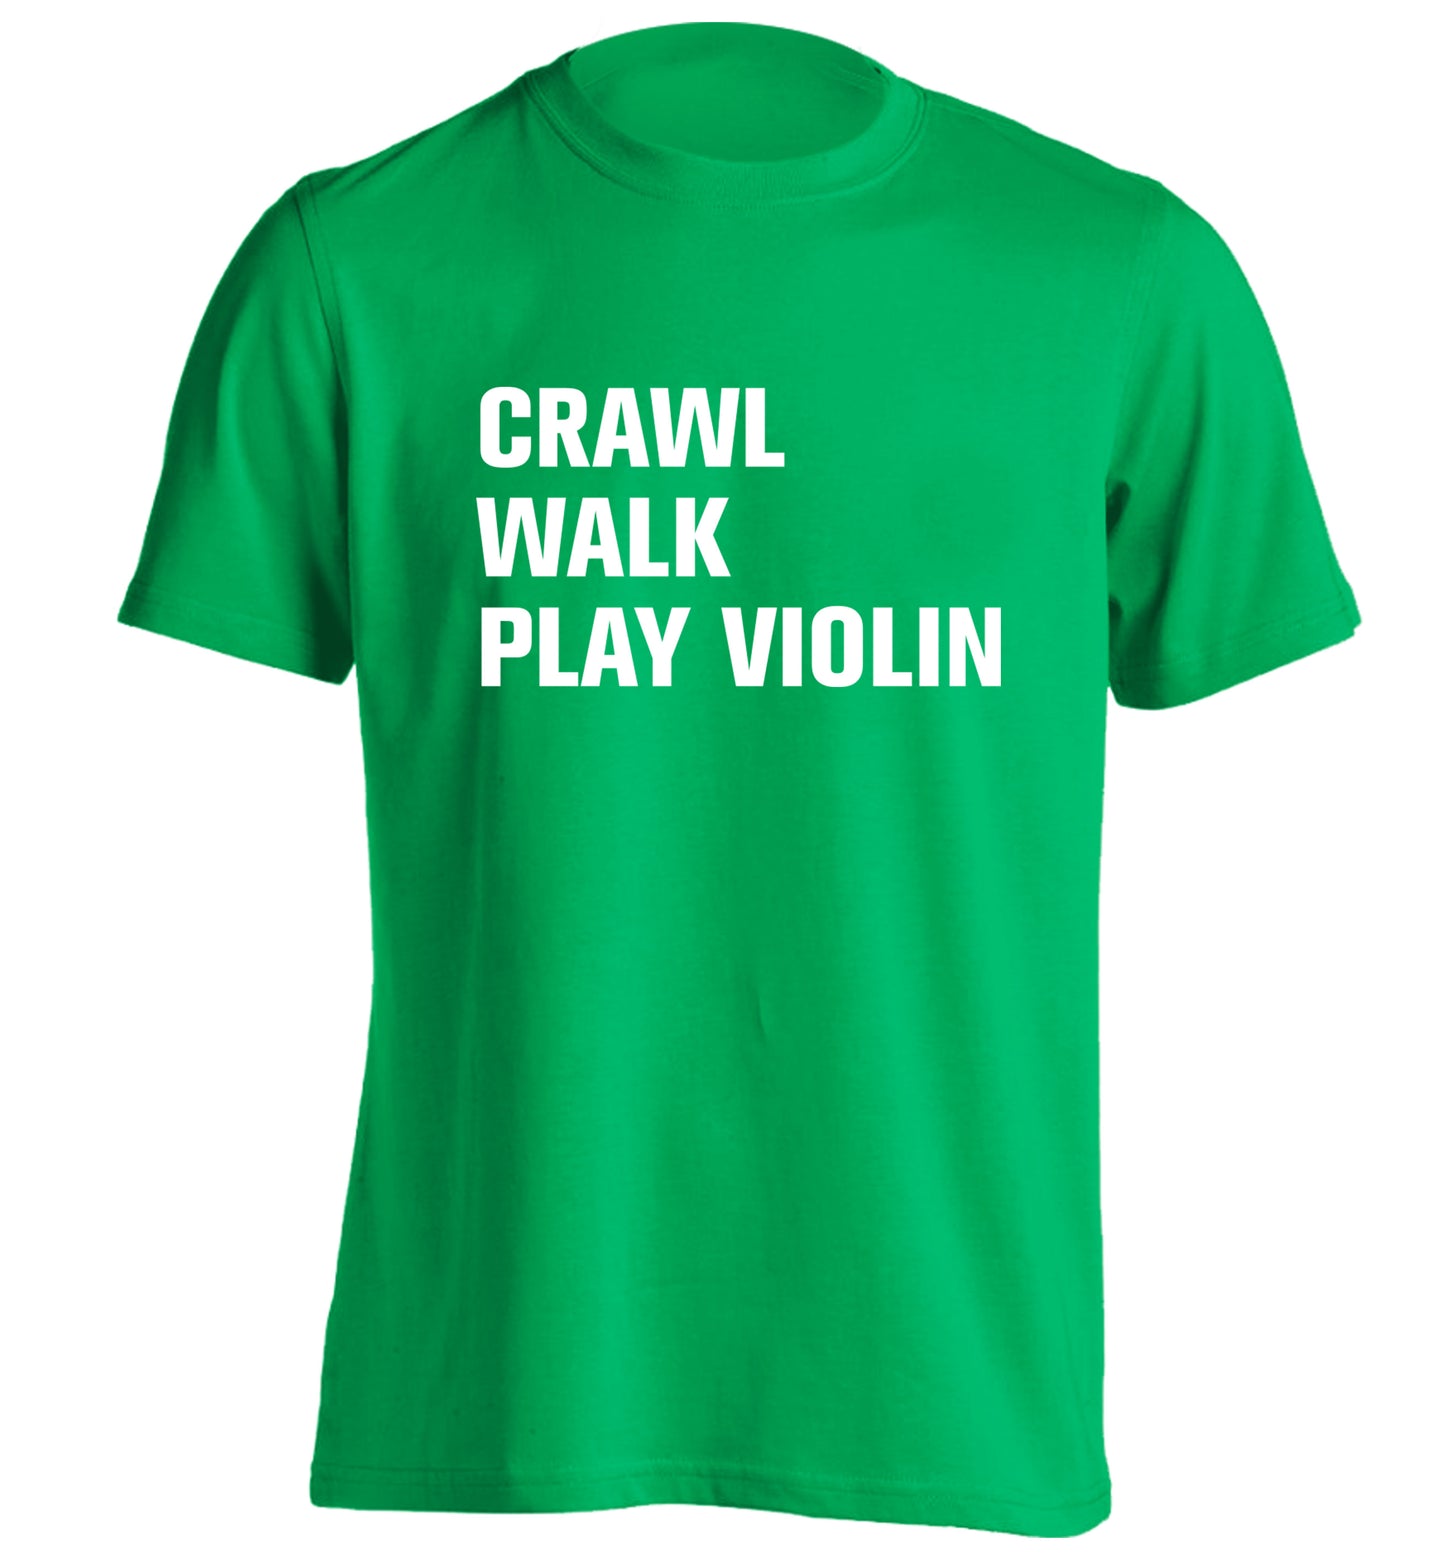 Crawl Walk Play Violin adults unisex green Tshirt 2XL